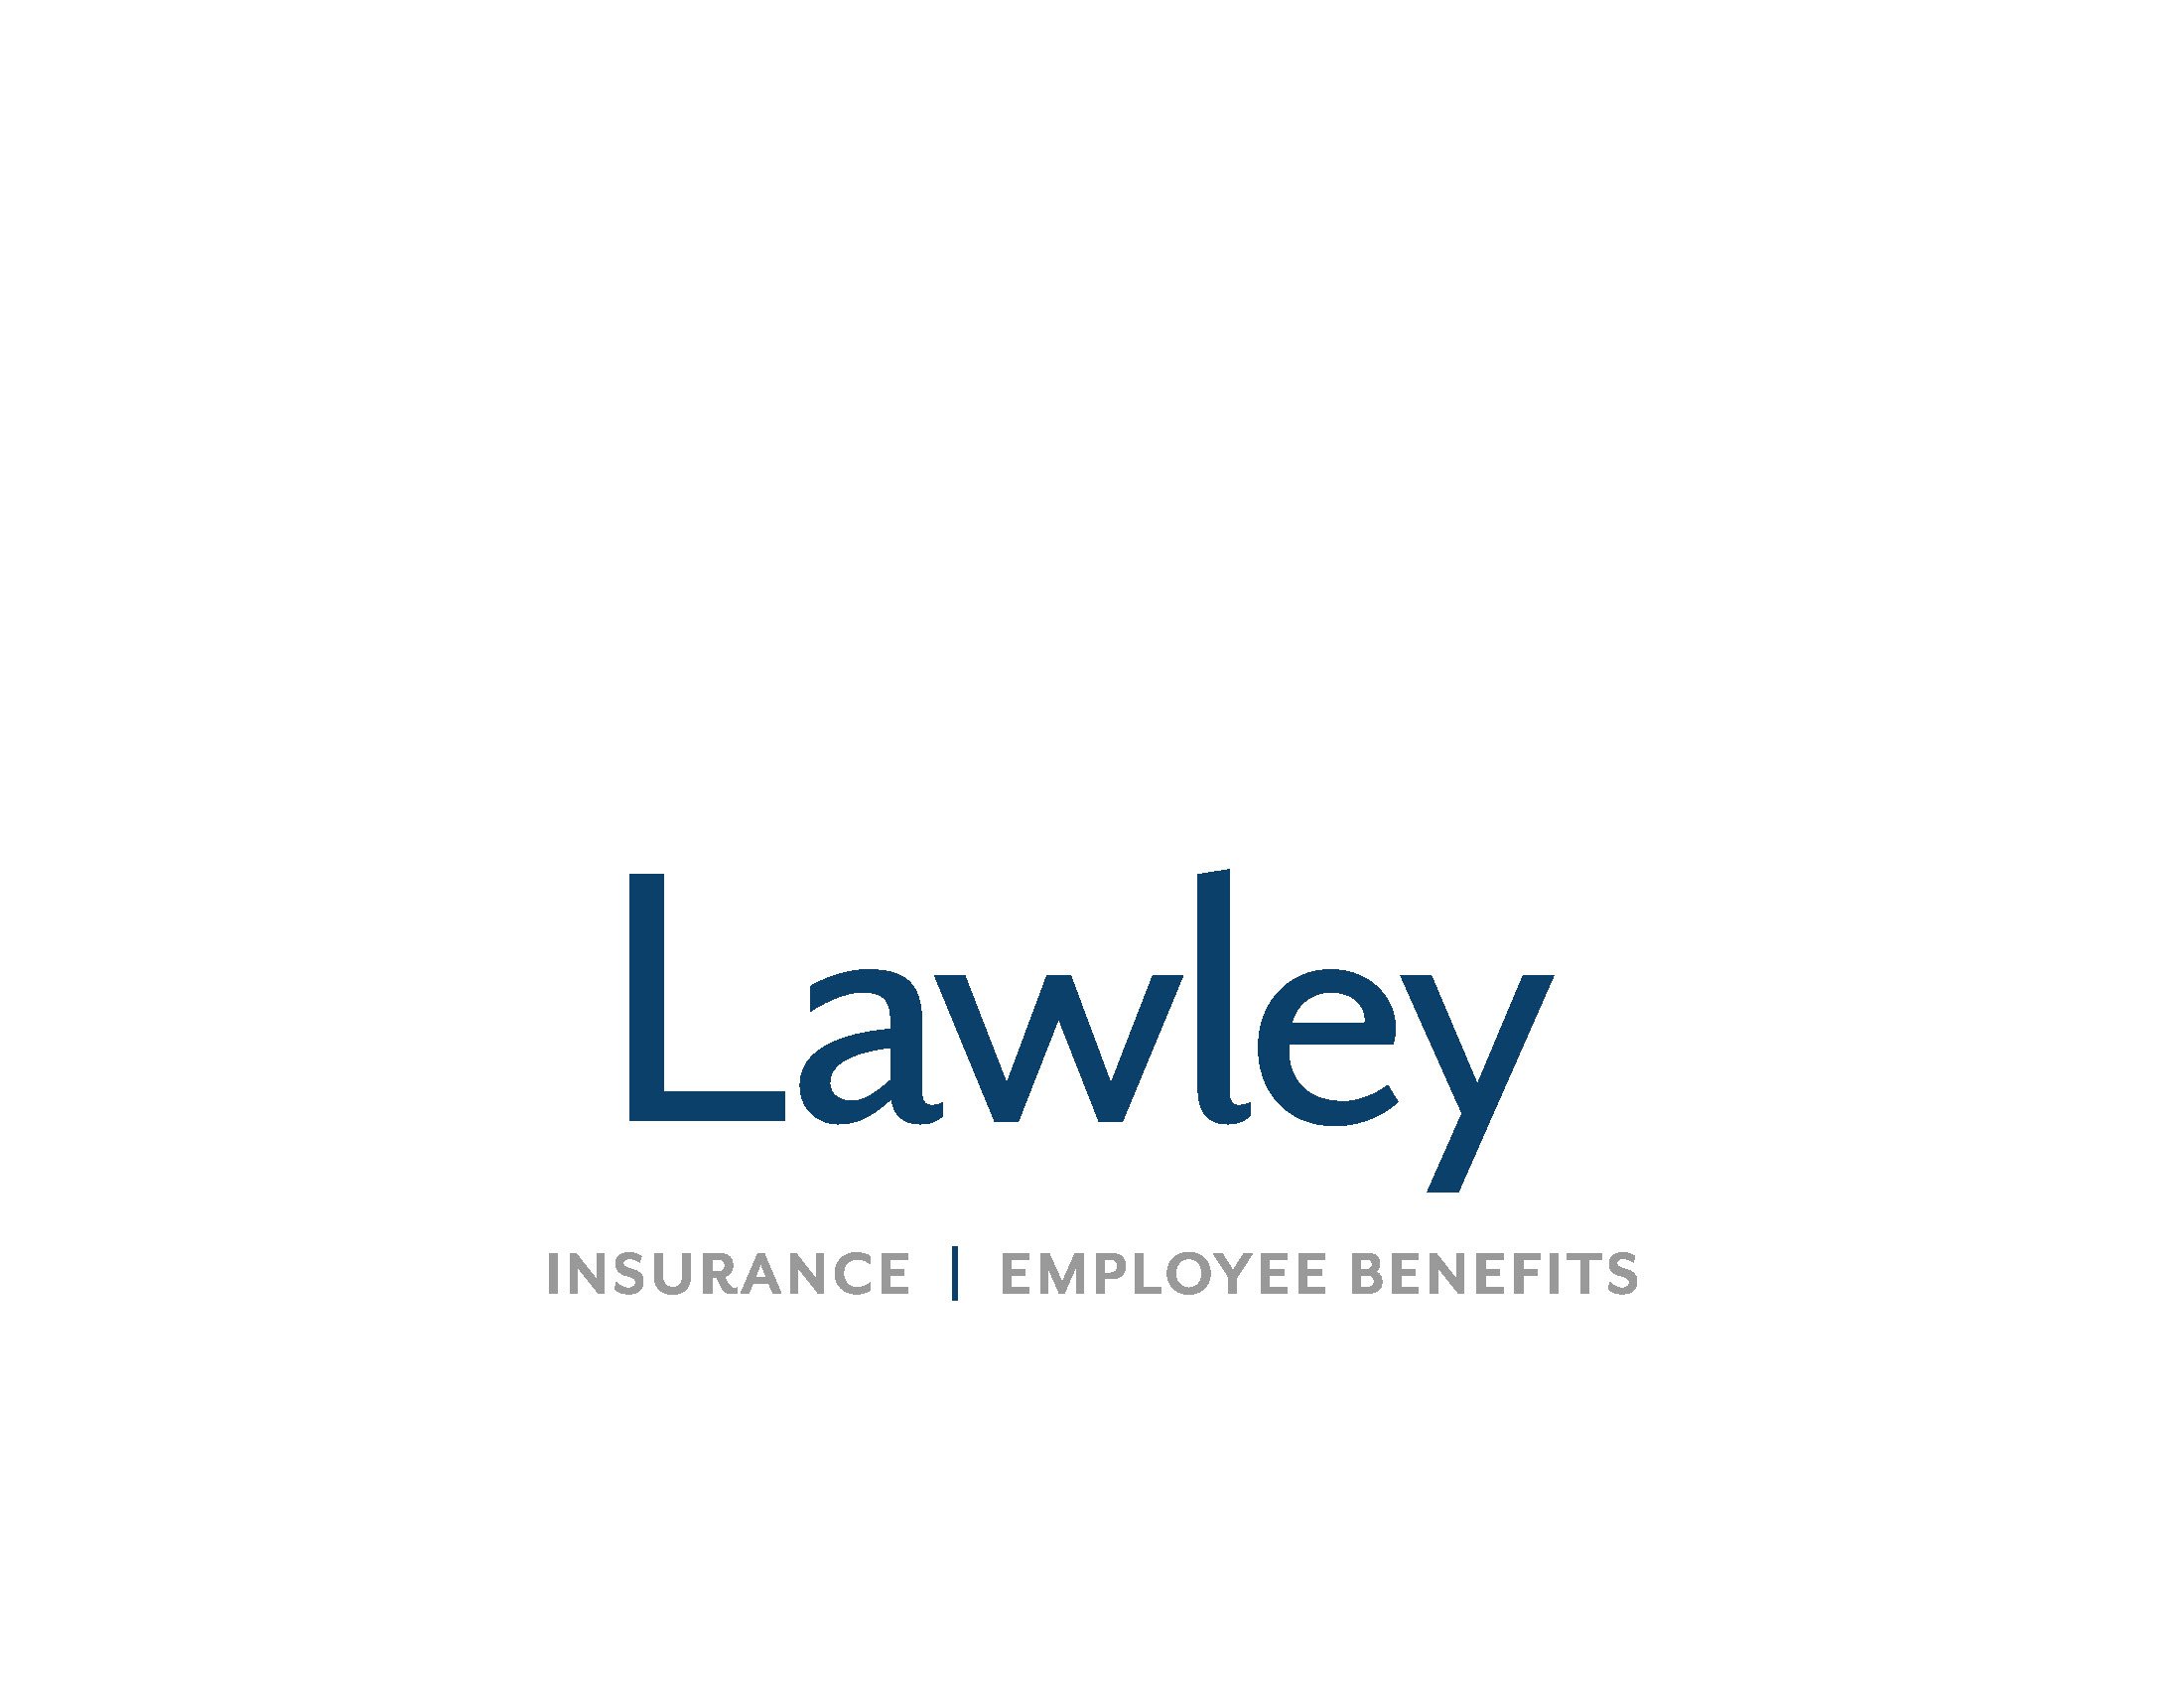 Lawley_logo and tag_process (1).jpg